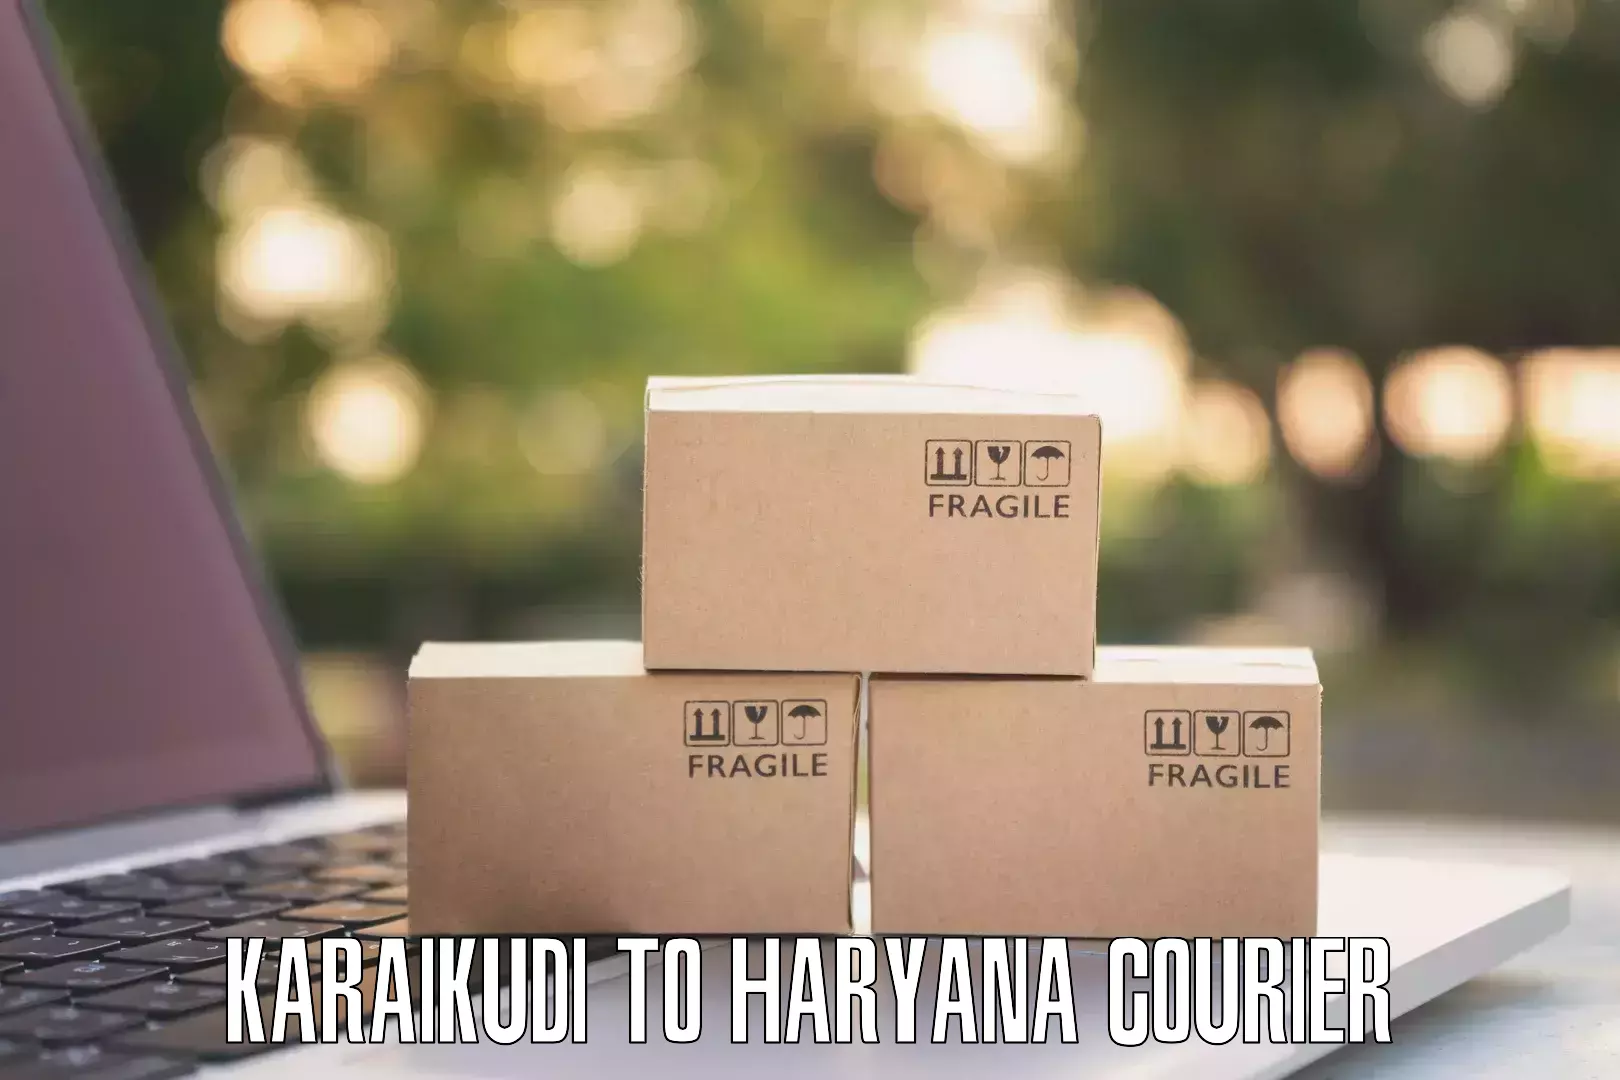 Customizable delivery plans Karaikudi to Karnal